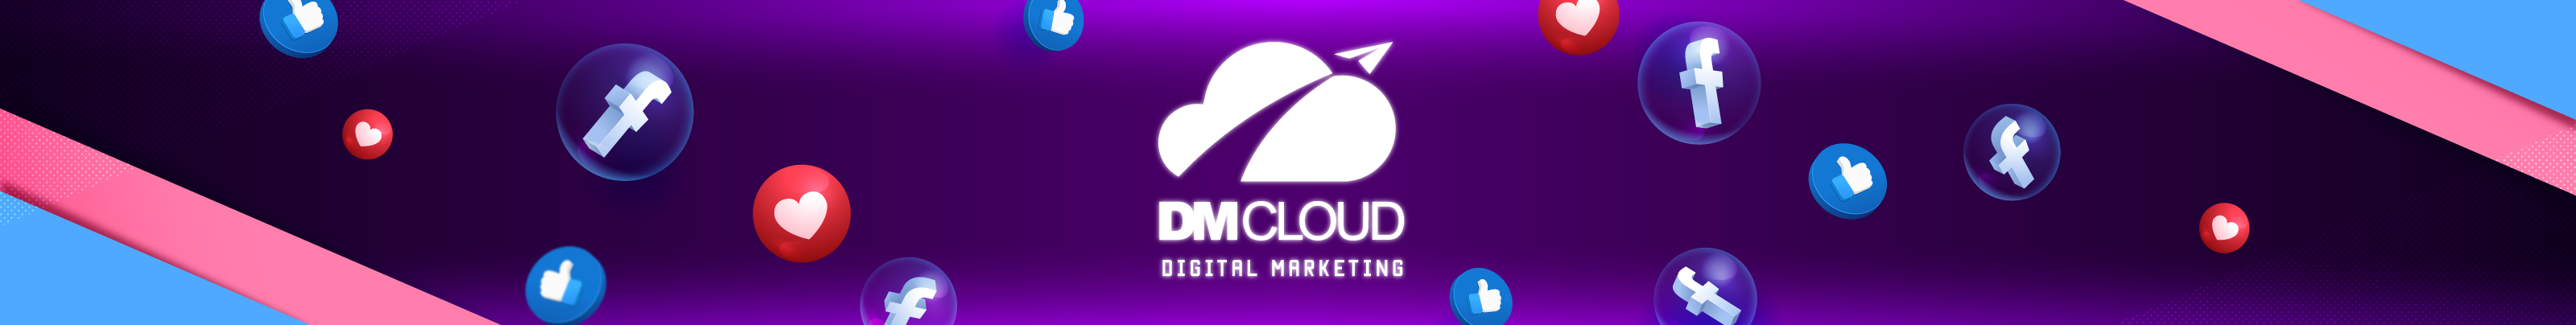 Profil-Banner von DM cloud